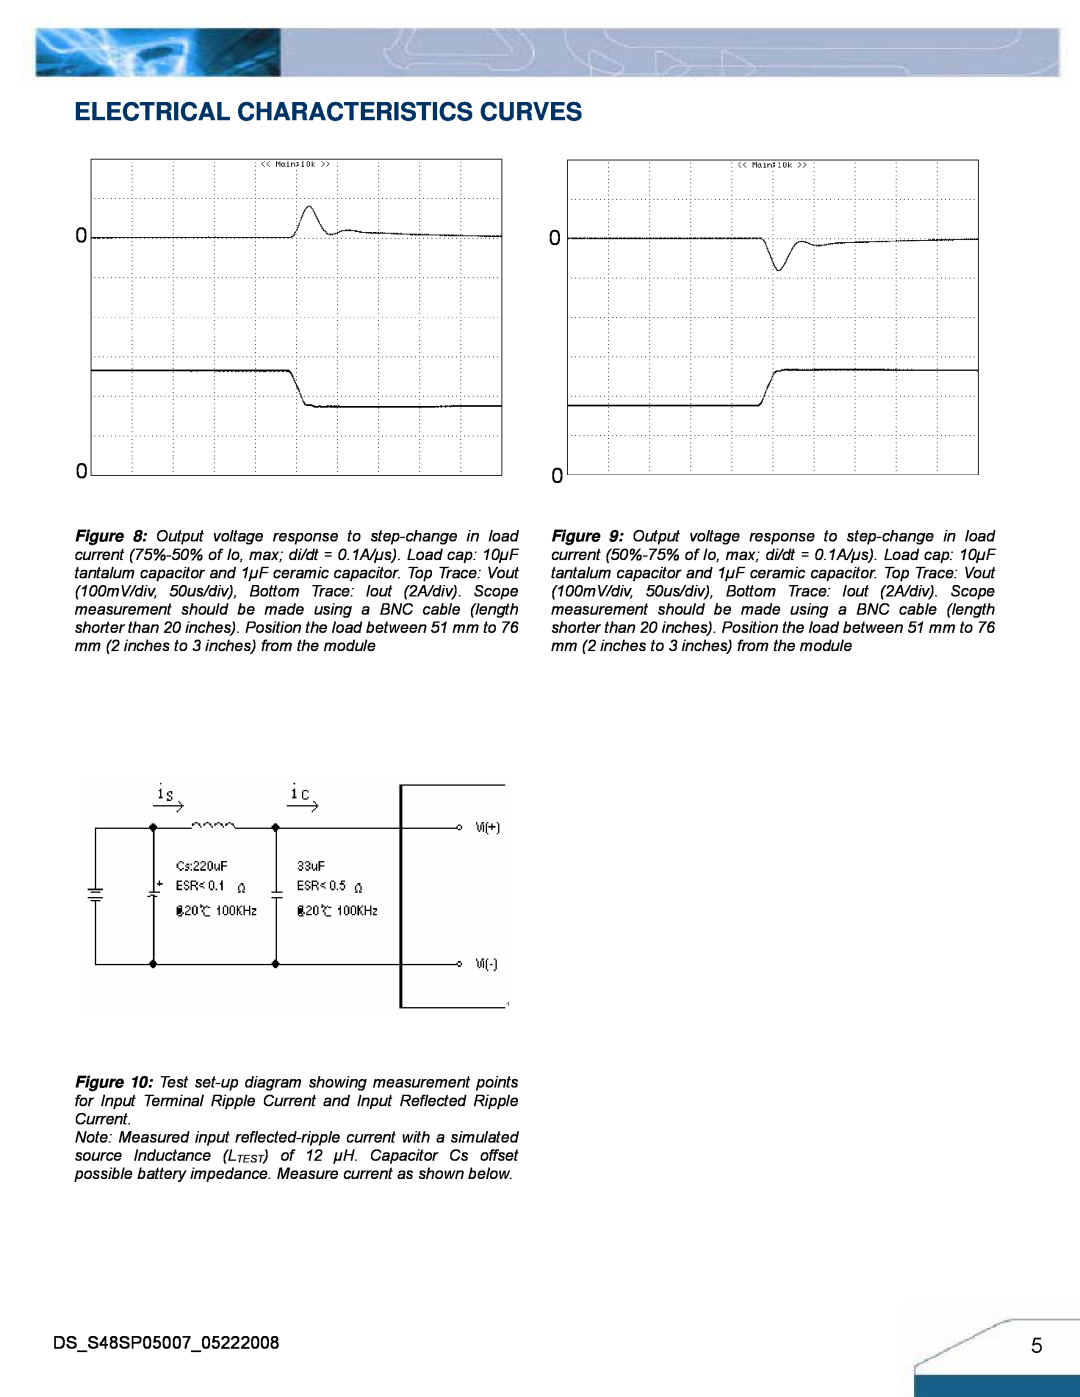 Delta Electronics manual Electrical Characteristics Curves, DSS48SP0500705222008 